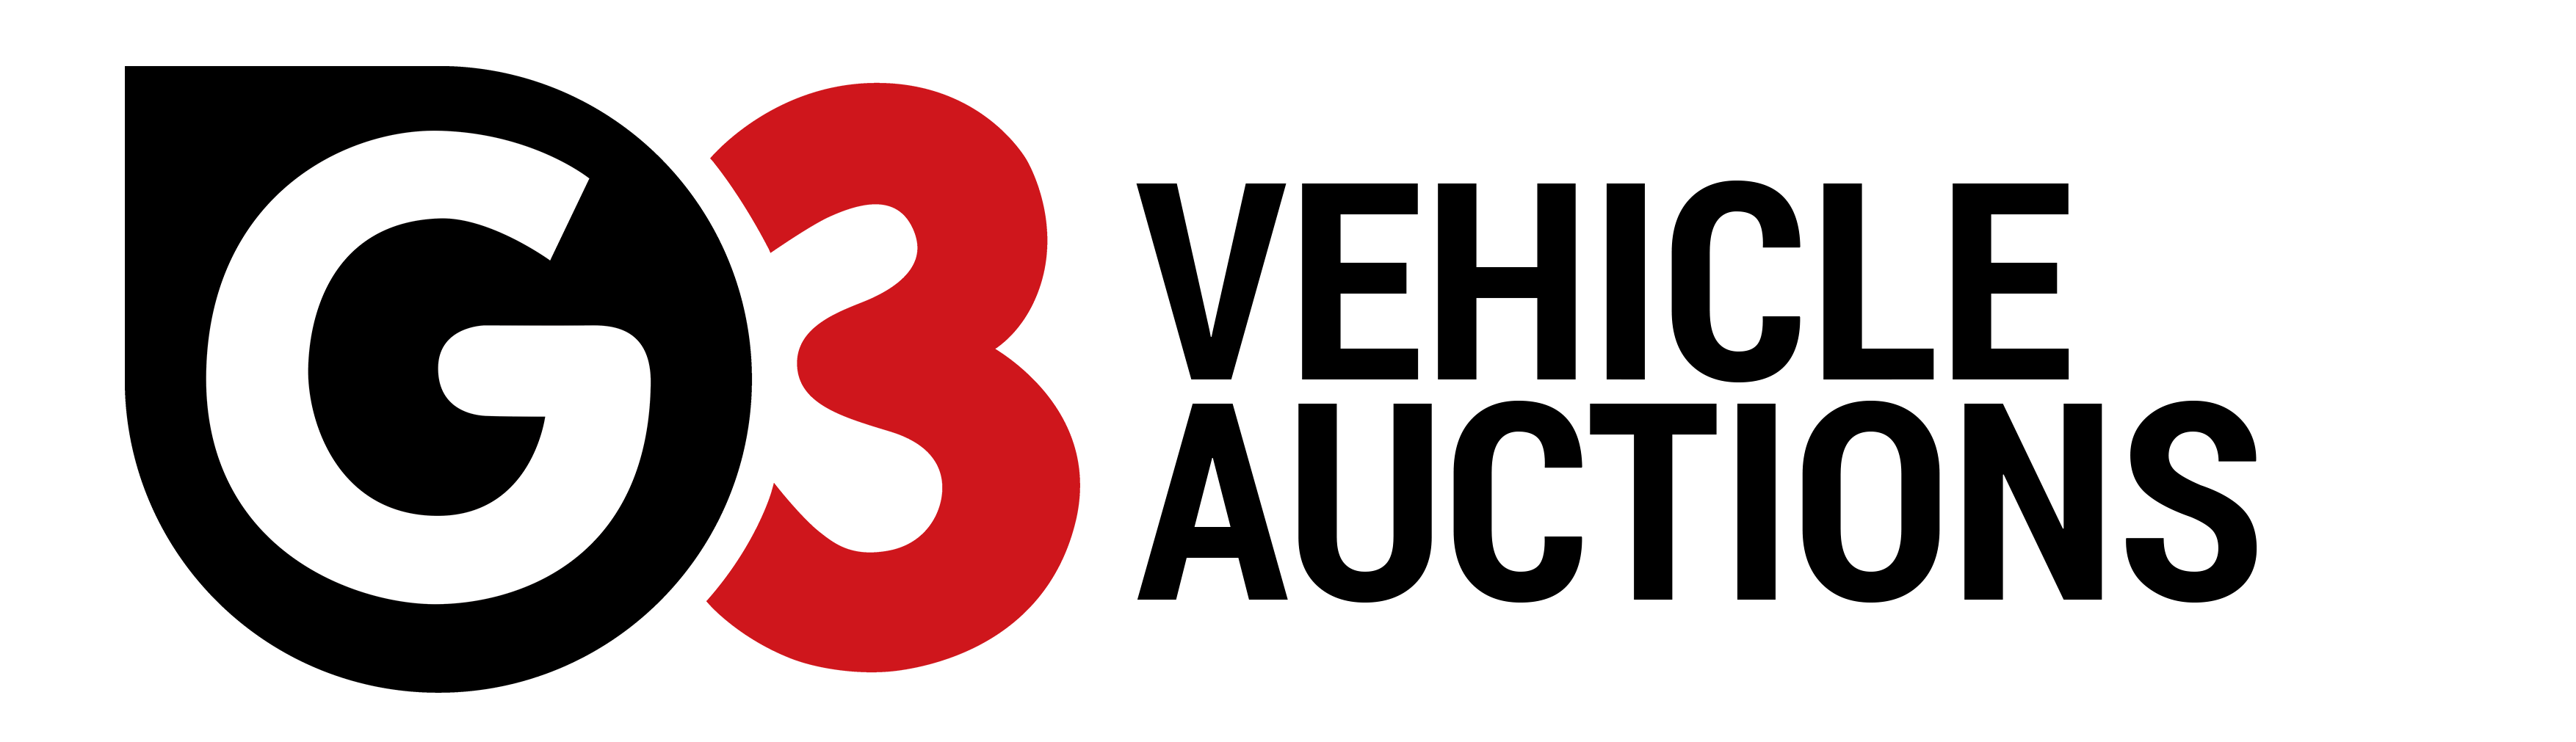 logo for G3 Remarketing Ltd